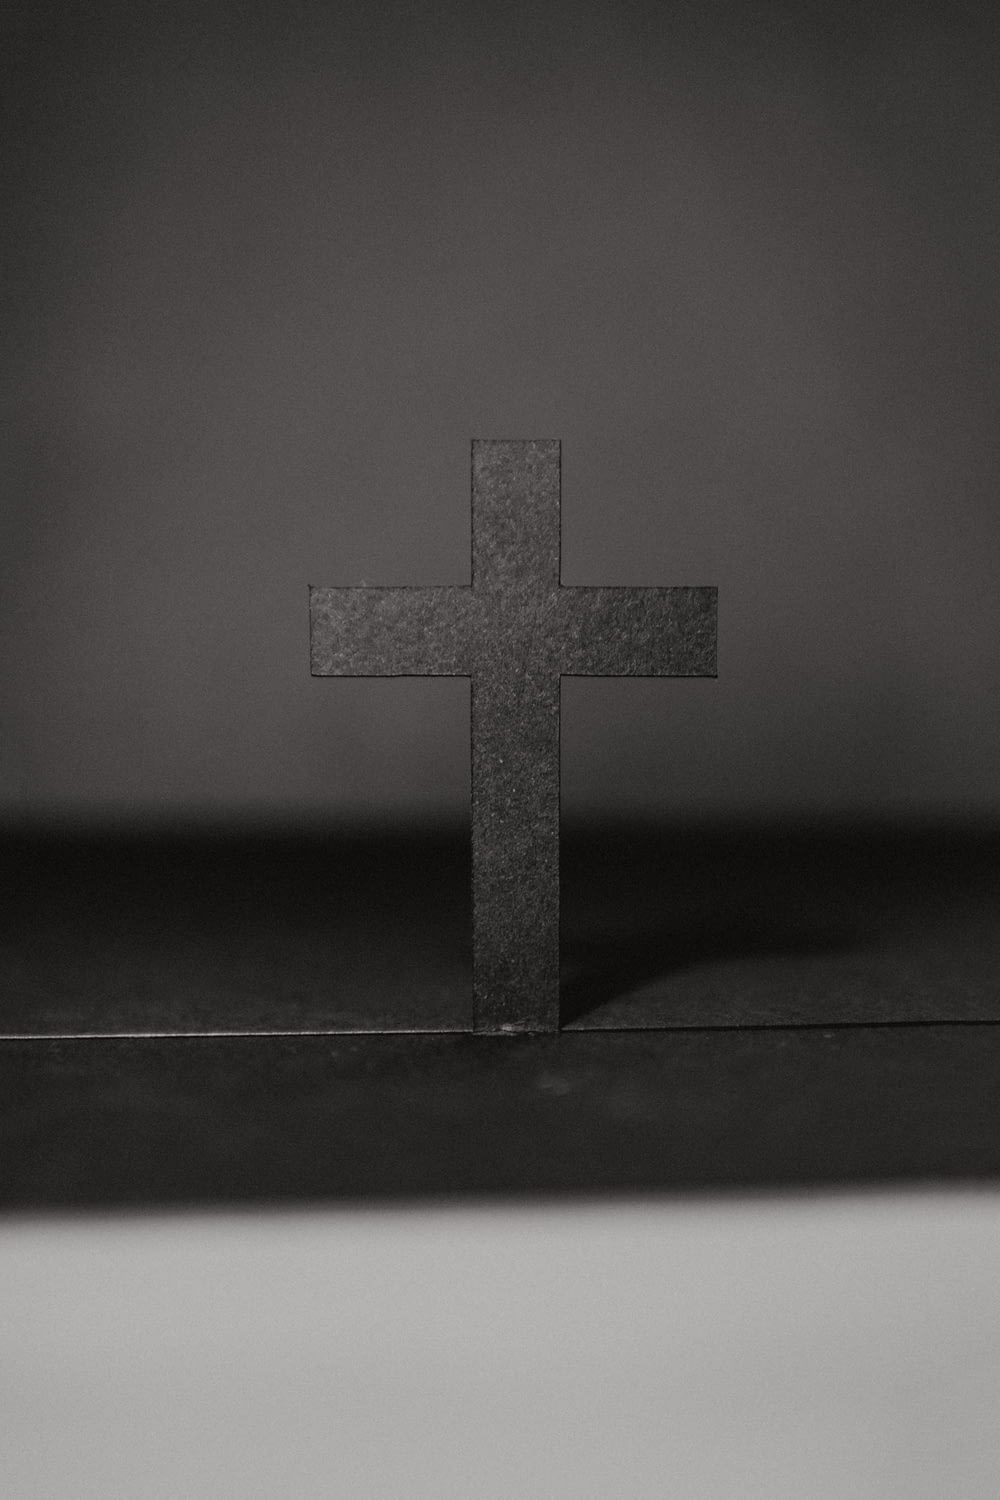 테이블에 십자가의 그레이스케일 사진